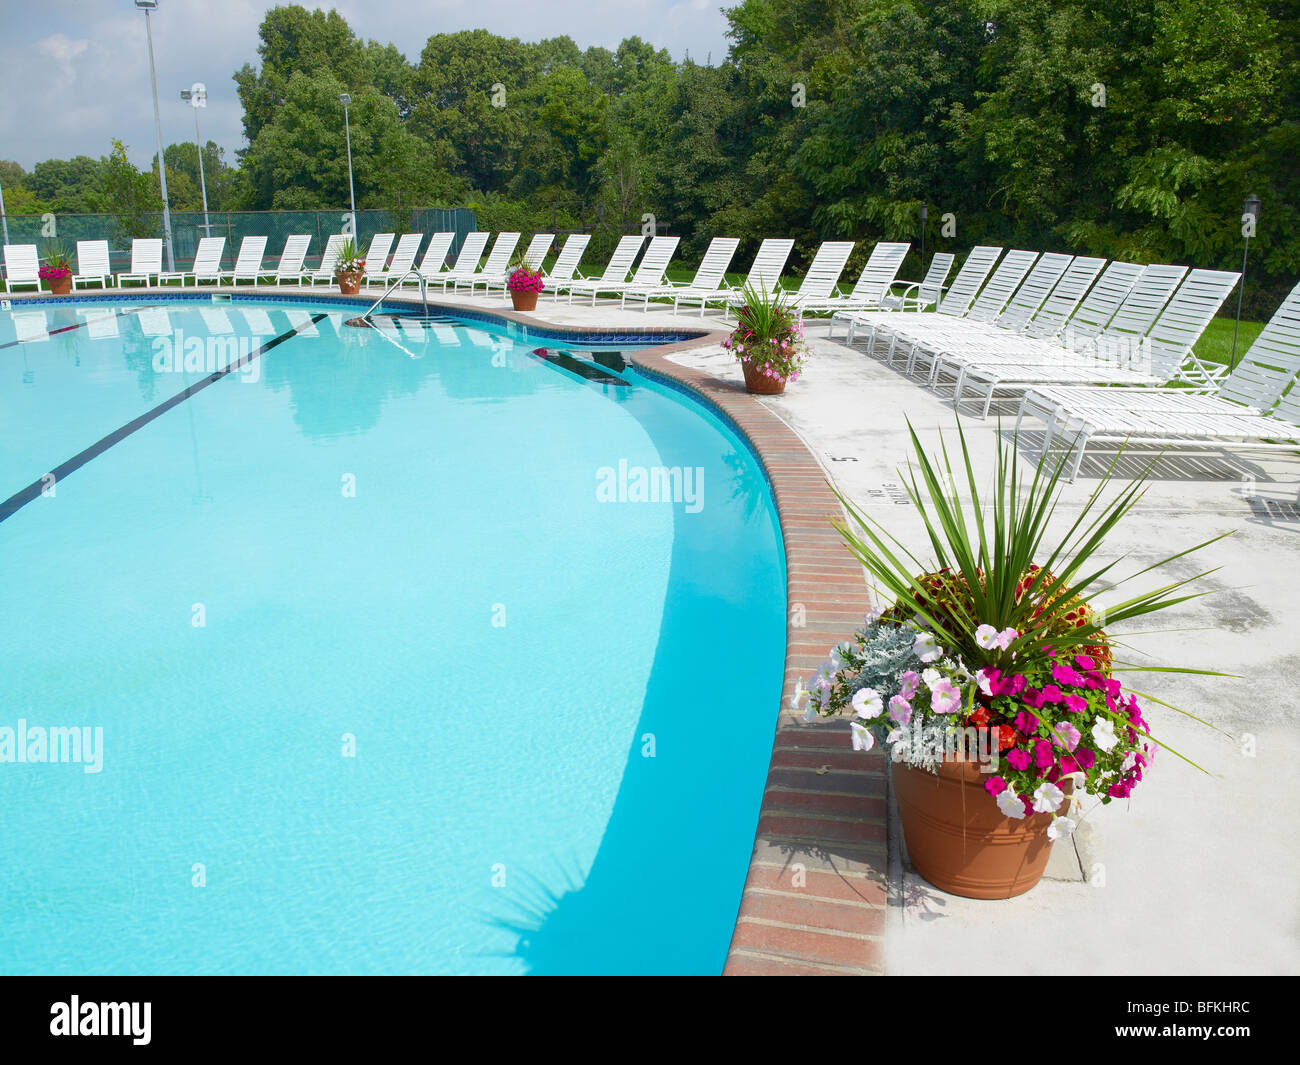 Swimmingpool mit Liegestühlen und Topfpflanzen Blumen, Pennsylvania, USA Stockfoto